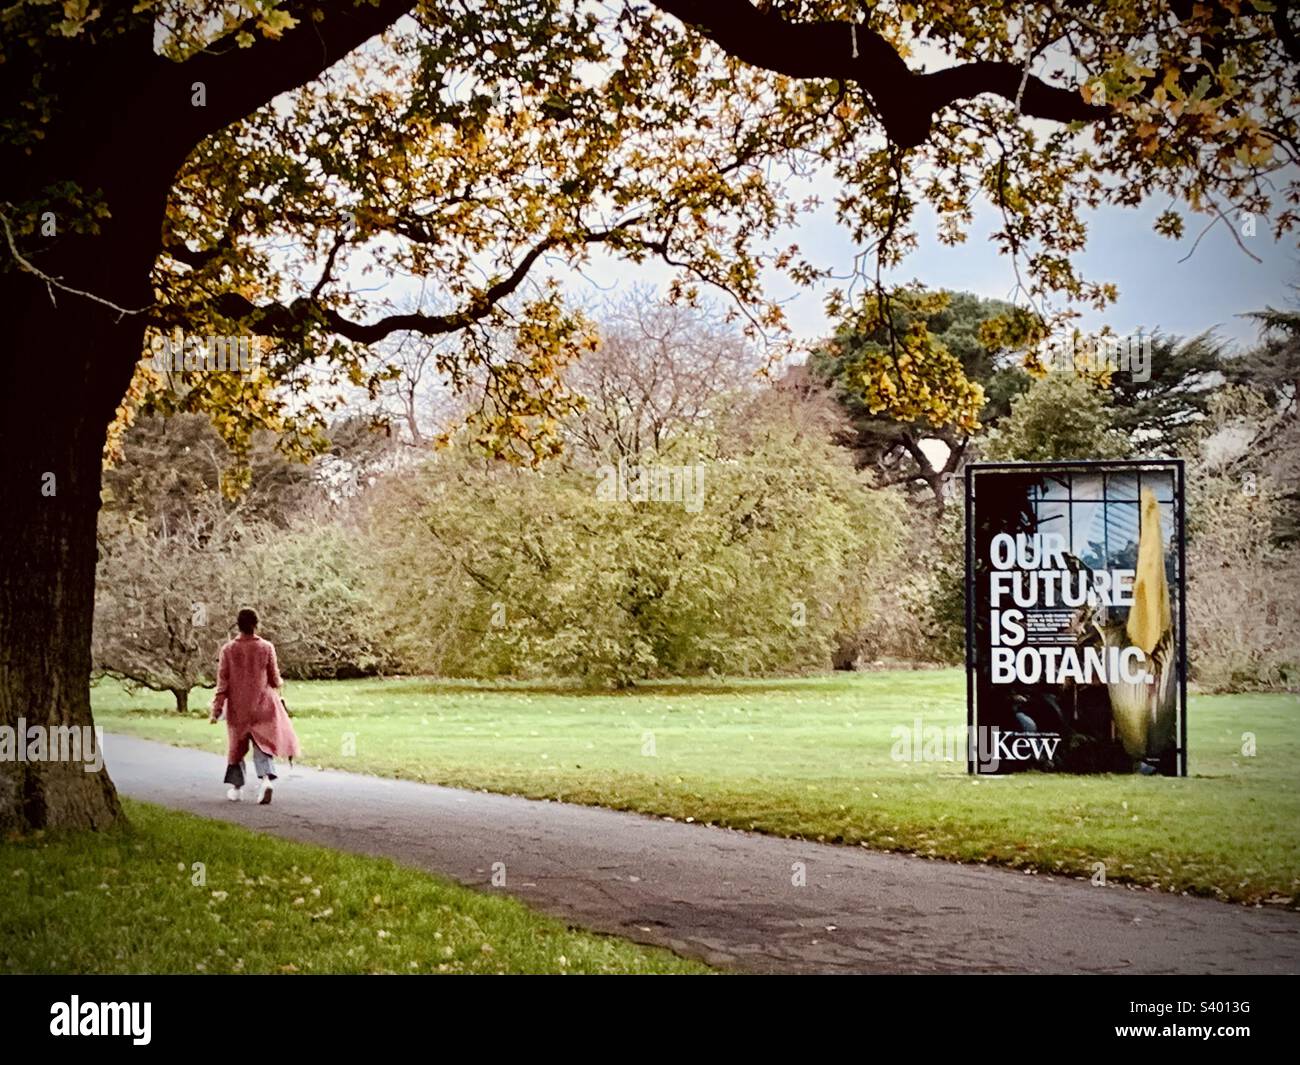 Lady wearing long pink coat walking through Royal Botanic Gardens at Kew with sign saying “our future is botanic” Stock Photo